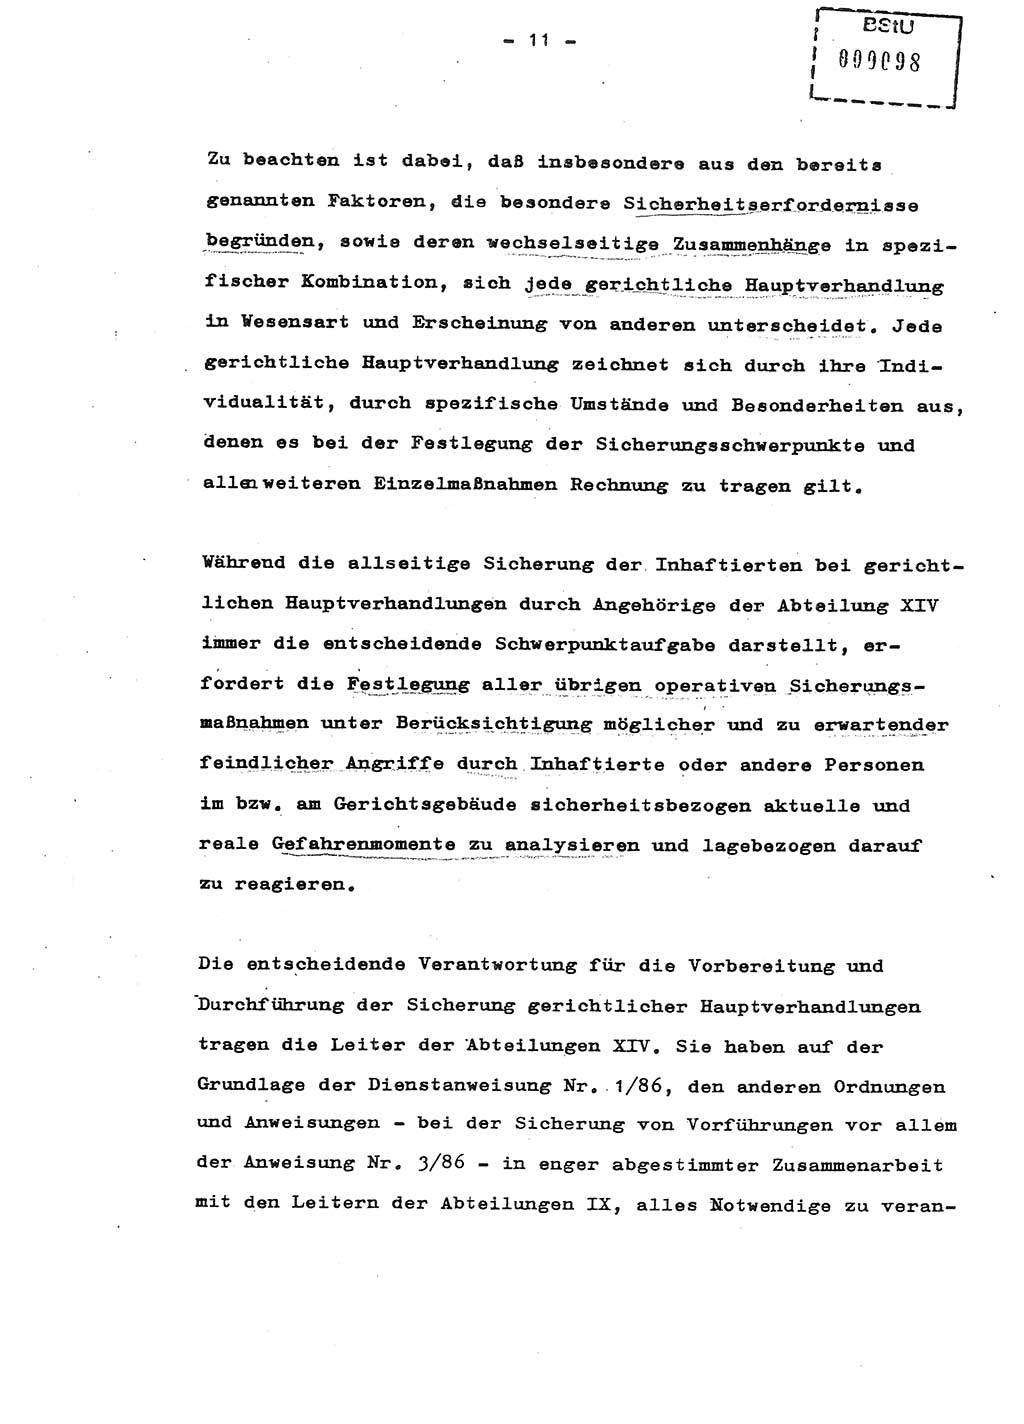 Schulungsmaterial Exemplar-Nr.: 8, Ministerium für Staatssicherheit [Deutsche Demokratische Republik (DDR)], Abteilung (Abt.) ⅩⅣ, Berlin 1987, Seite 11 (Sch.-Mat. Expl. 8 MfS DDR Abt. ⅩⅣ /87 1987, S. 11)